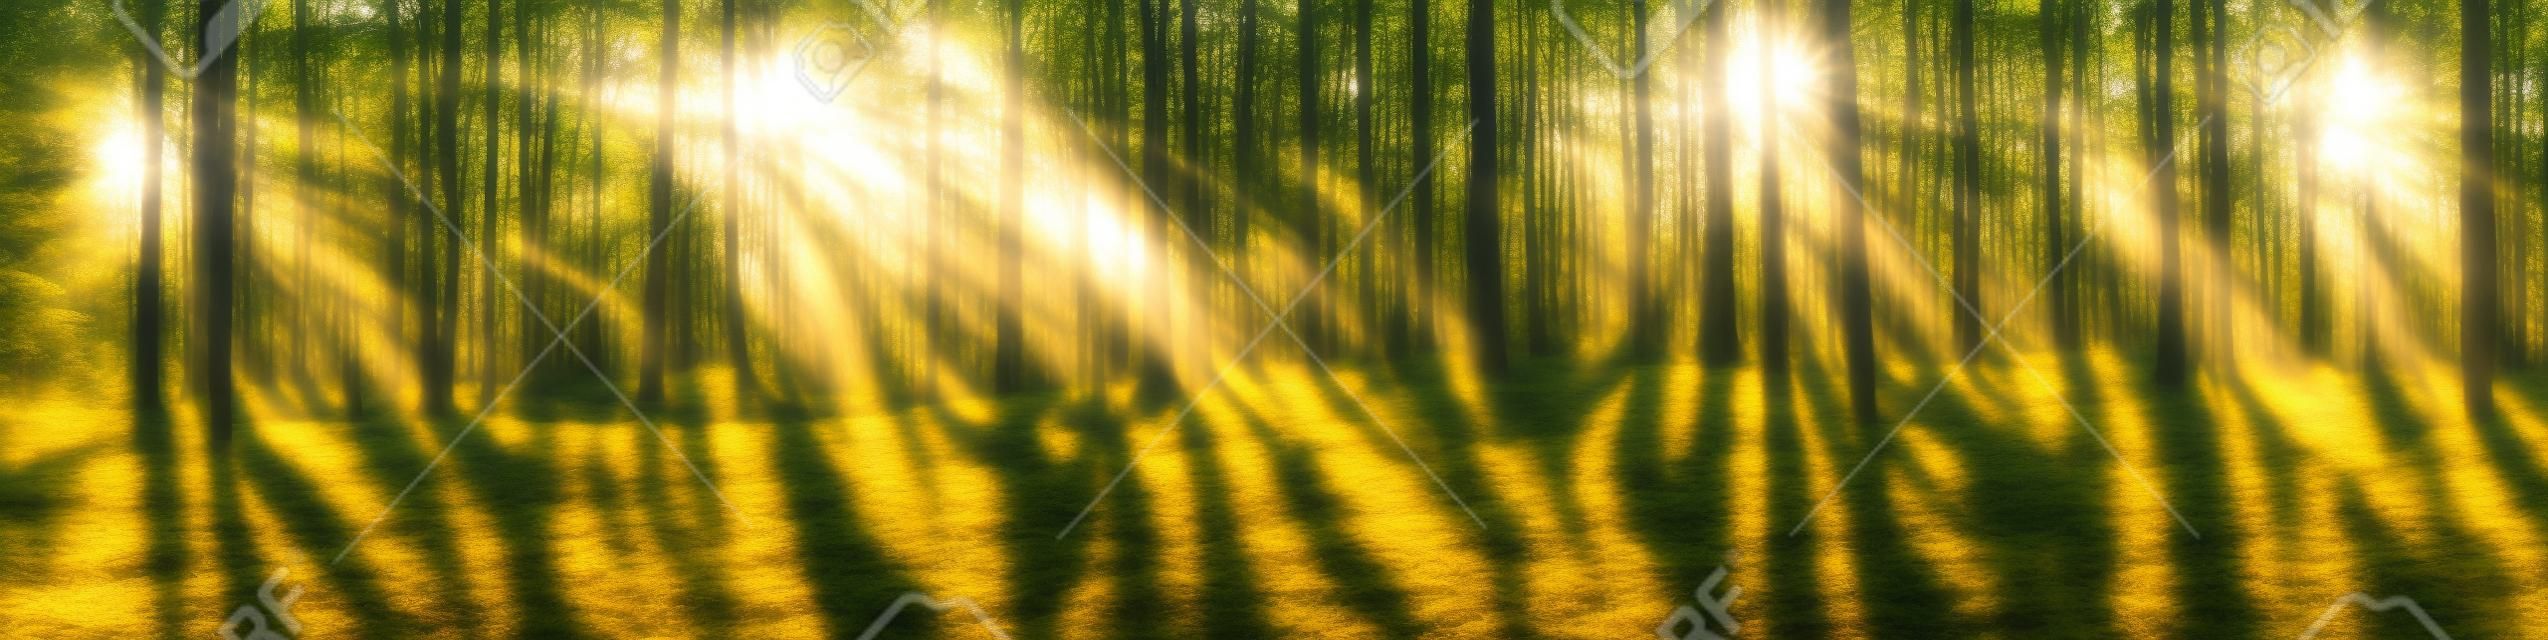 Bellissimo panorama della foresta con un sole splendente che splende attraverso gli alberi